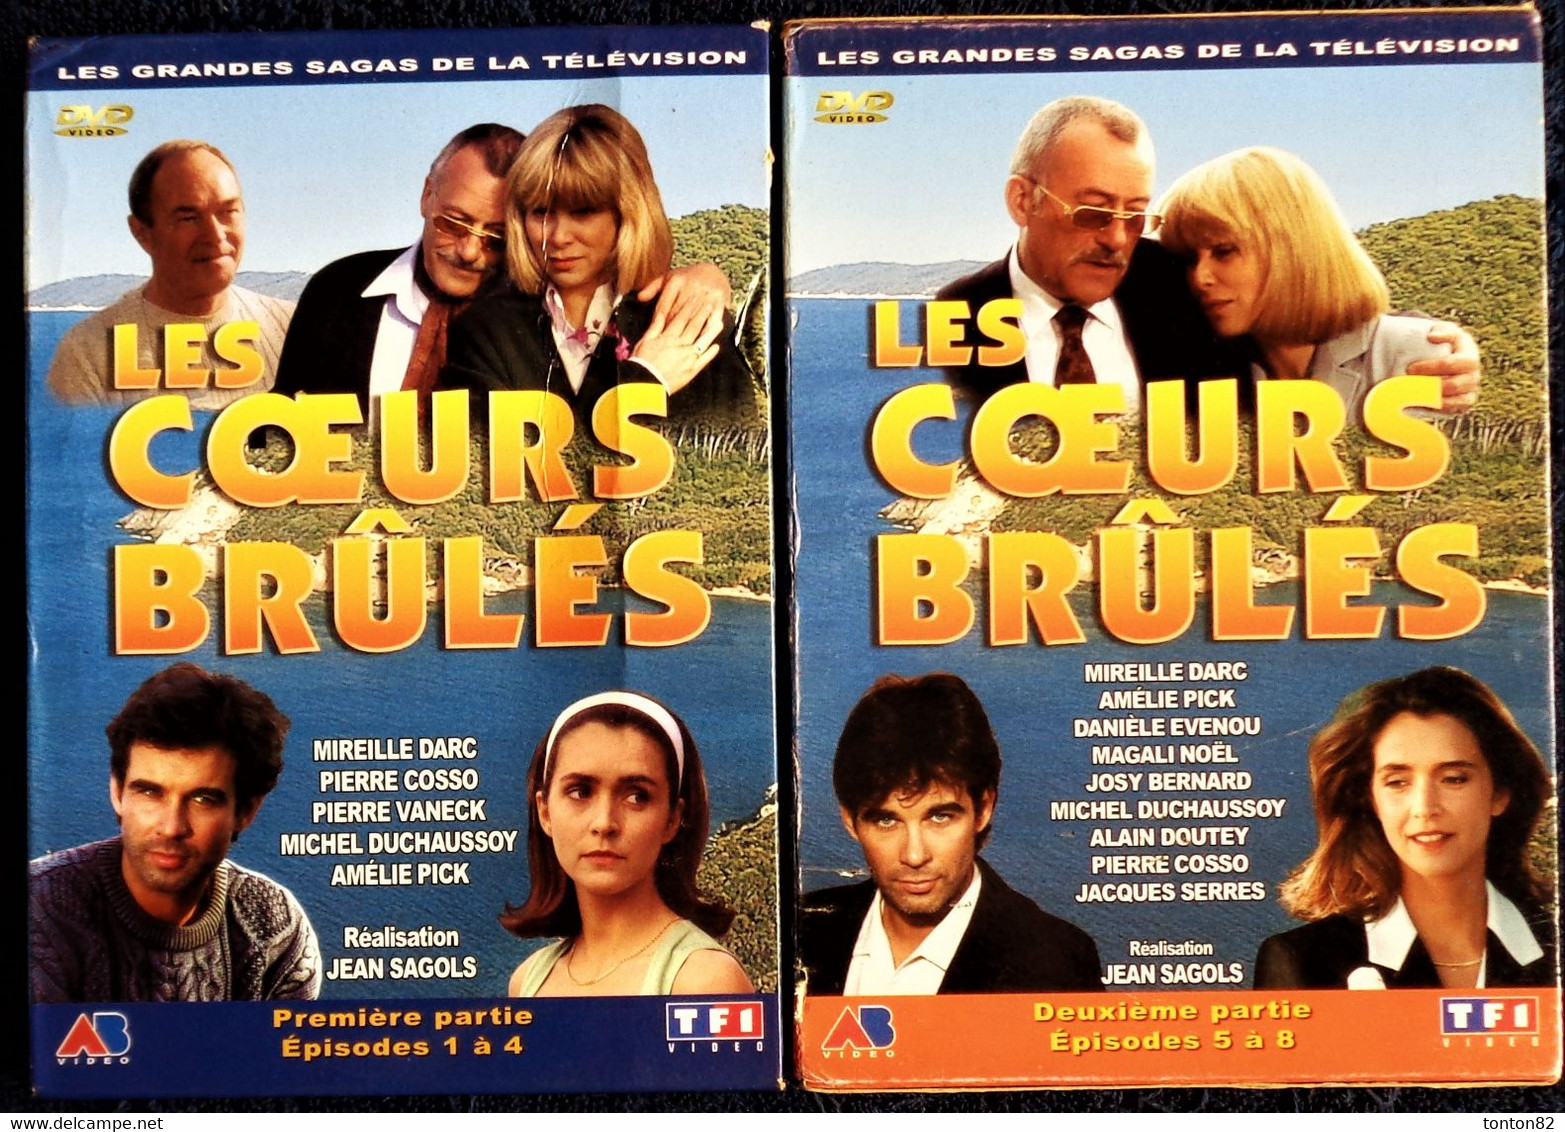 Les Cœurs Brûlés 1 - Complet - 8 DVD - 8 épisodes - Mireille Darc - Pierre Cosco - Pierre Vaneck - Michel Duchaussoy . - TV Shows & Series